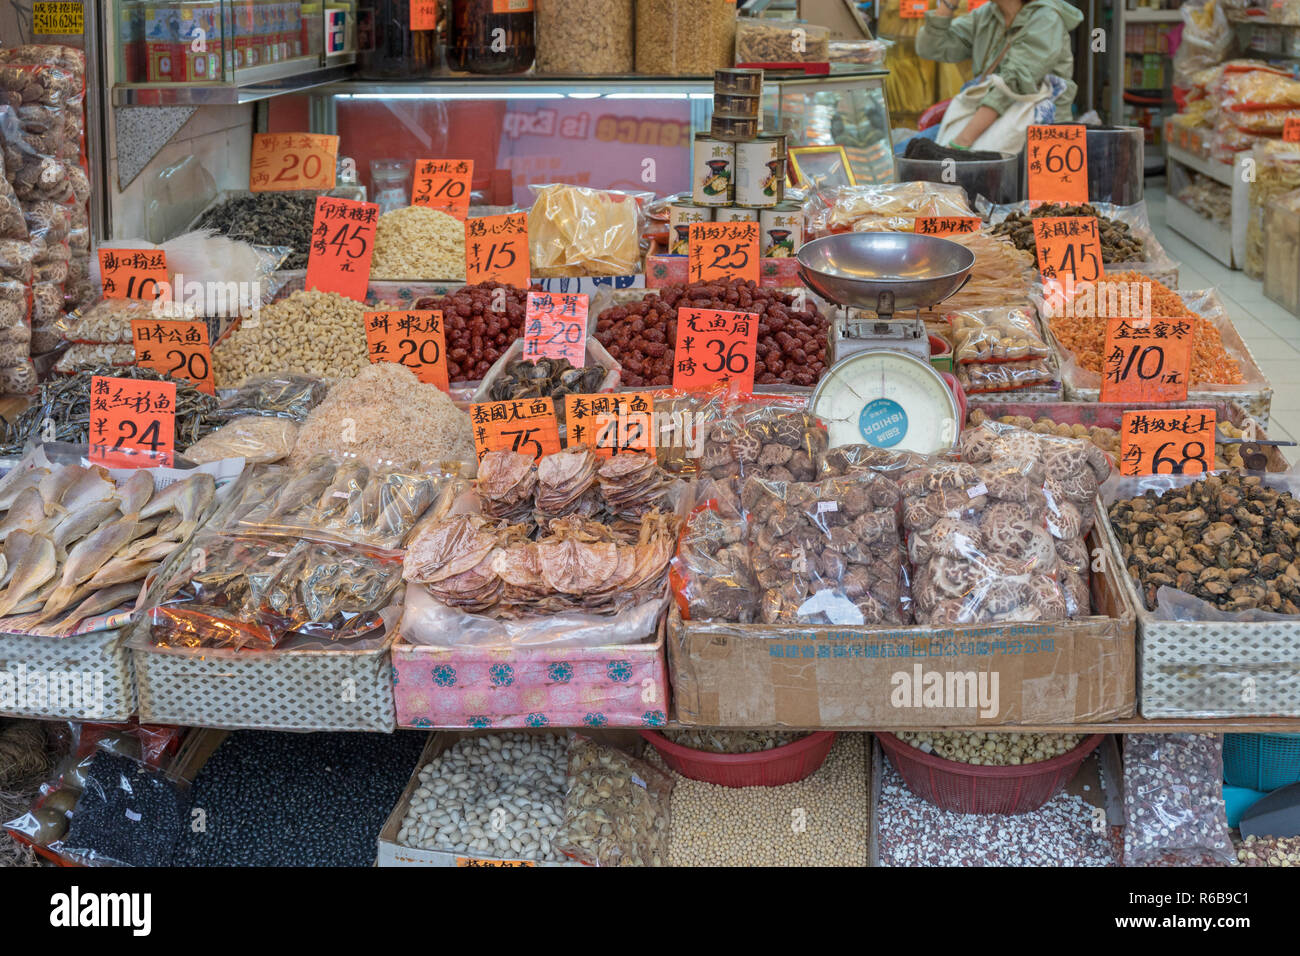 KOWLOON, HONG KONG - APRIL 22, 2017:  Traditional Chinese Ingredients Shop in Kowloon, Hong Kong. Stock Photo